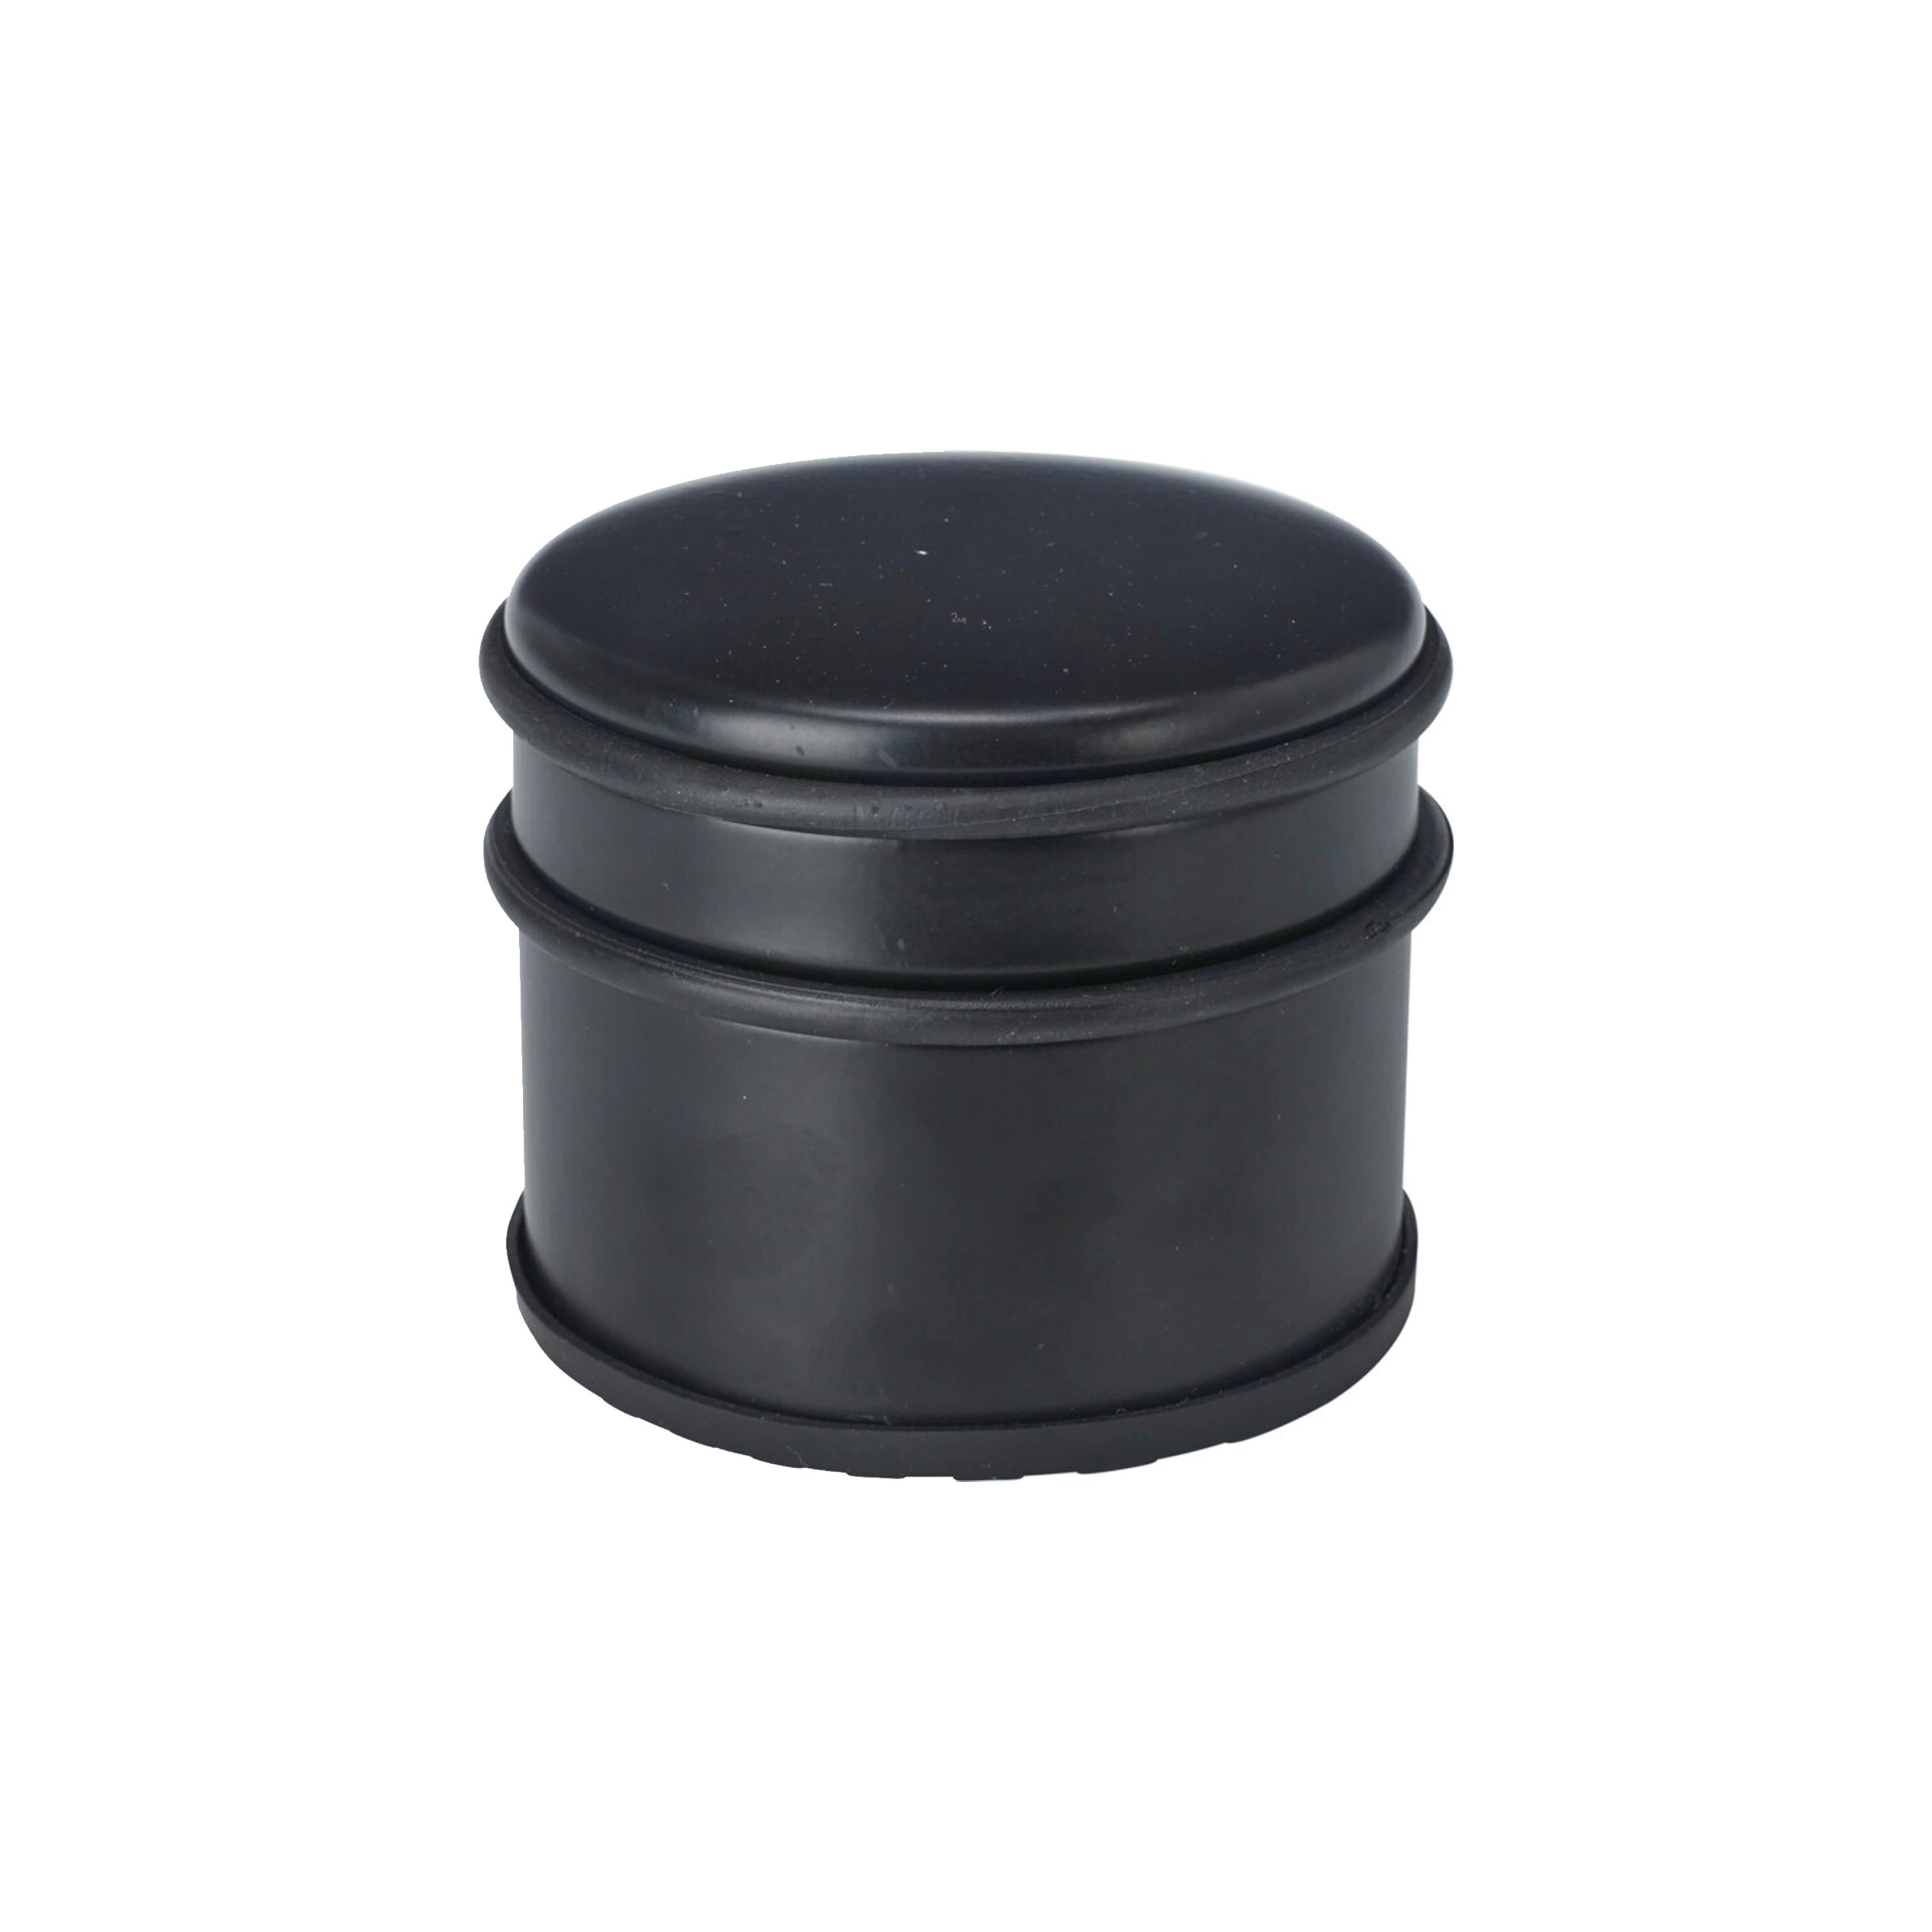 H&S Collection Deurstopper - rond - RVS - mat zwart - 10 x 10 x 9 cm - 1 kilo gewicht -